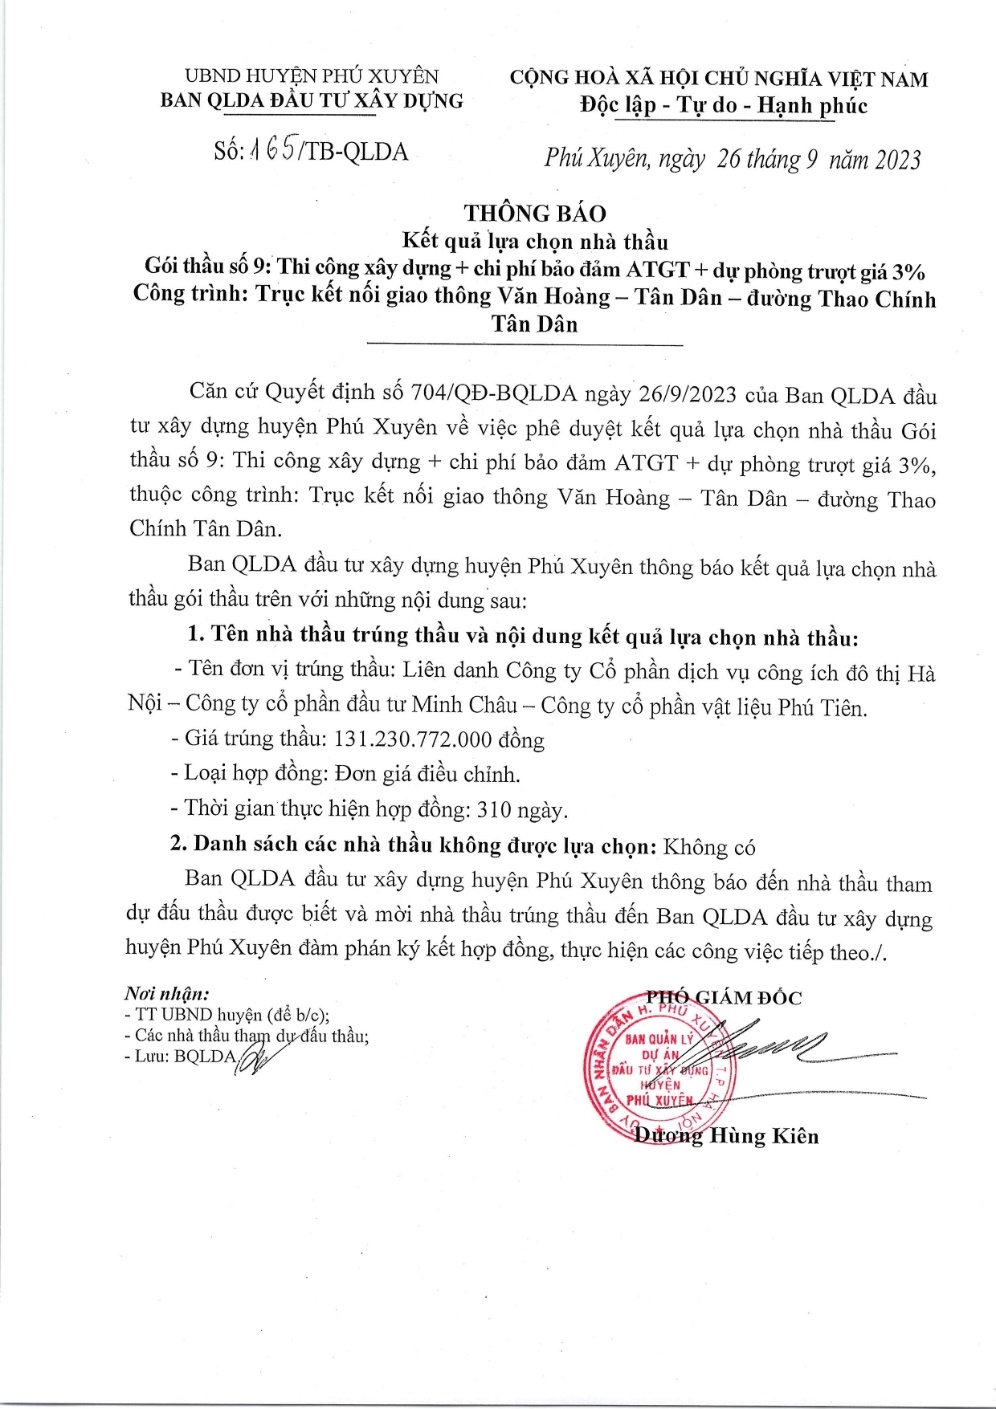 Hà Nội: Điểm danh loạt gói thầu tiết kiệm dưới 1% ở huyện Phú Xuyên, phát hiện nhiều nhà thầu “quen mặt”